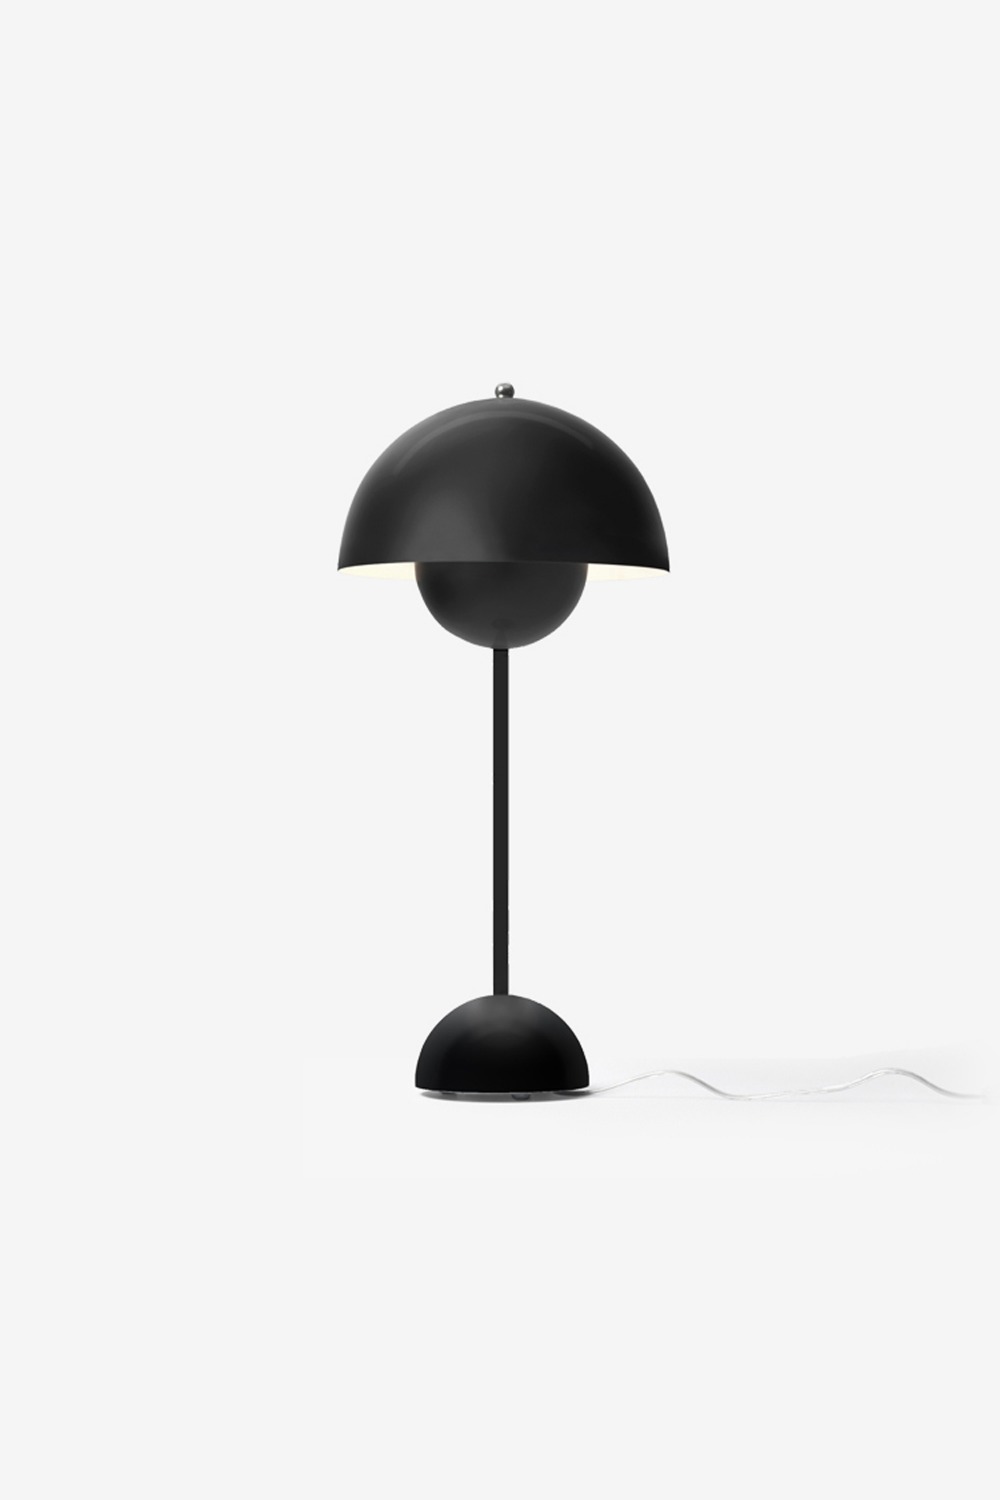 [Andtradition] Flowerpot Lamp /VP3 (Matt Black)